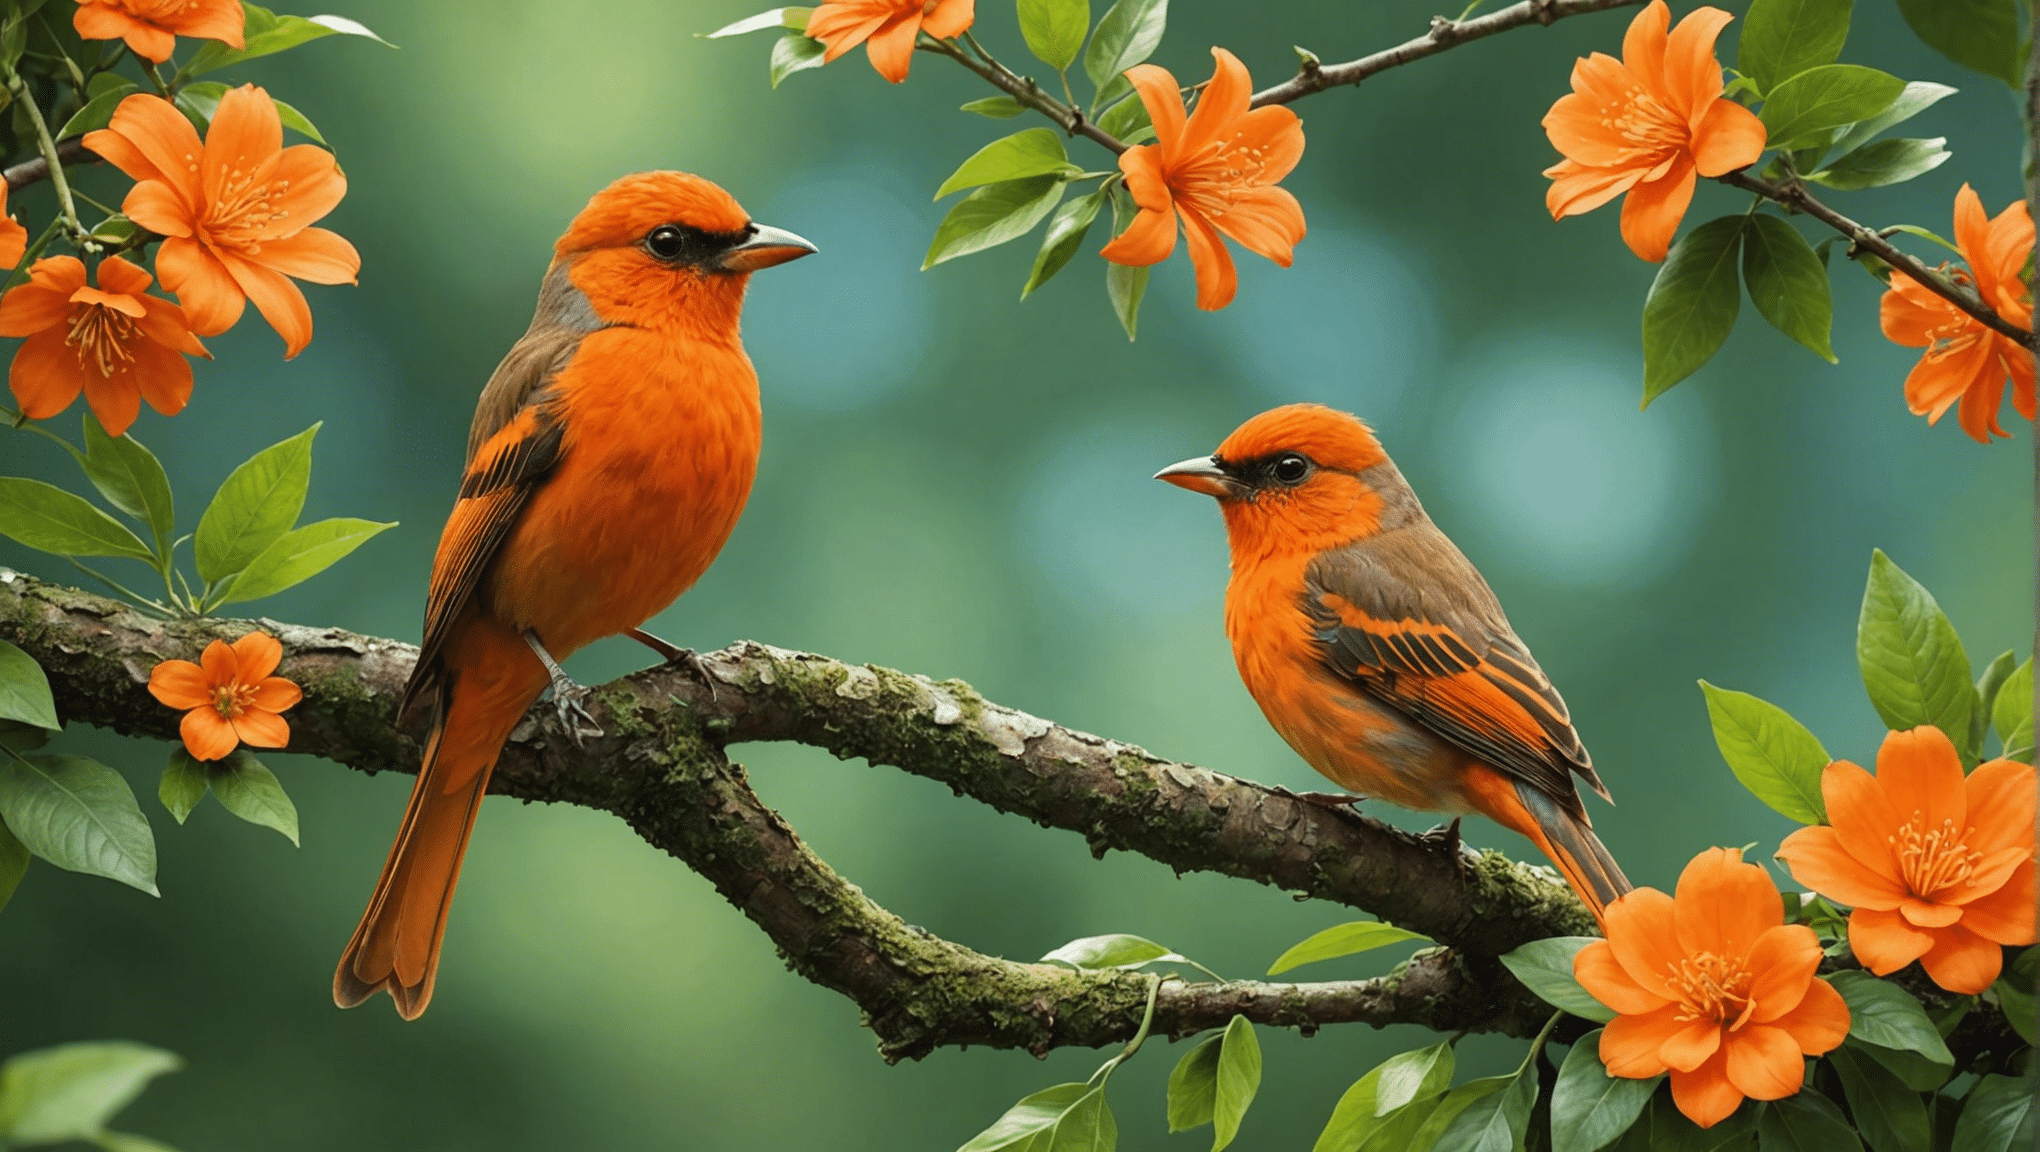 Turuncu kuşlar hakkındaki gerçeği keşfedin: onlar gerçek mi yoksa sadece bir efsane mi? gerçekleri öğrenin ve turuncu kuş gizeminin ardındaki gerçeği öğrenin.